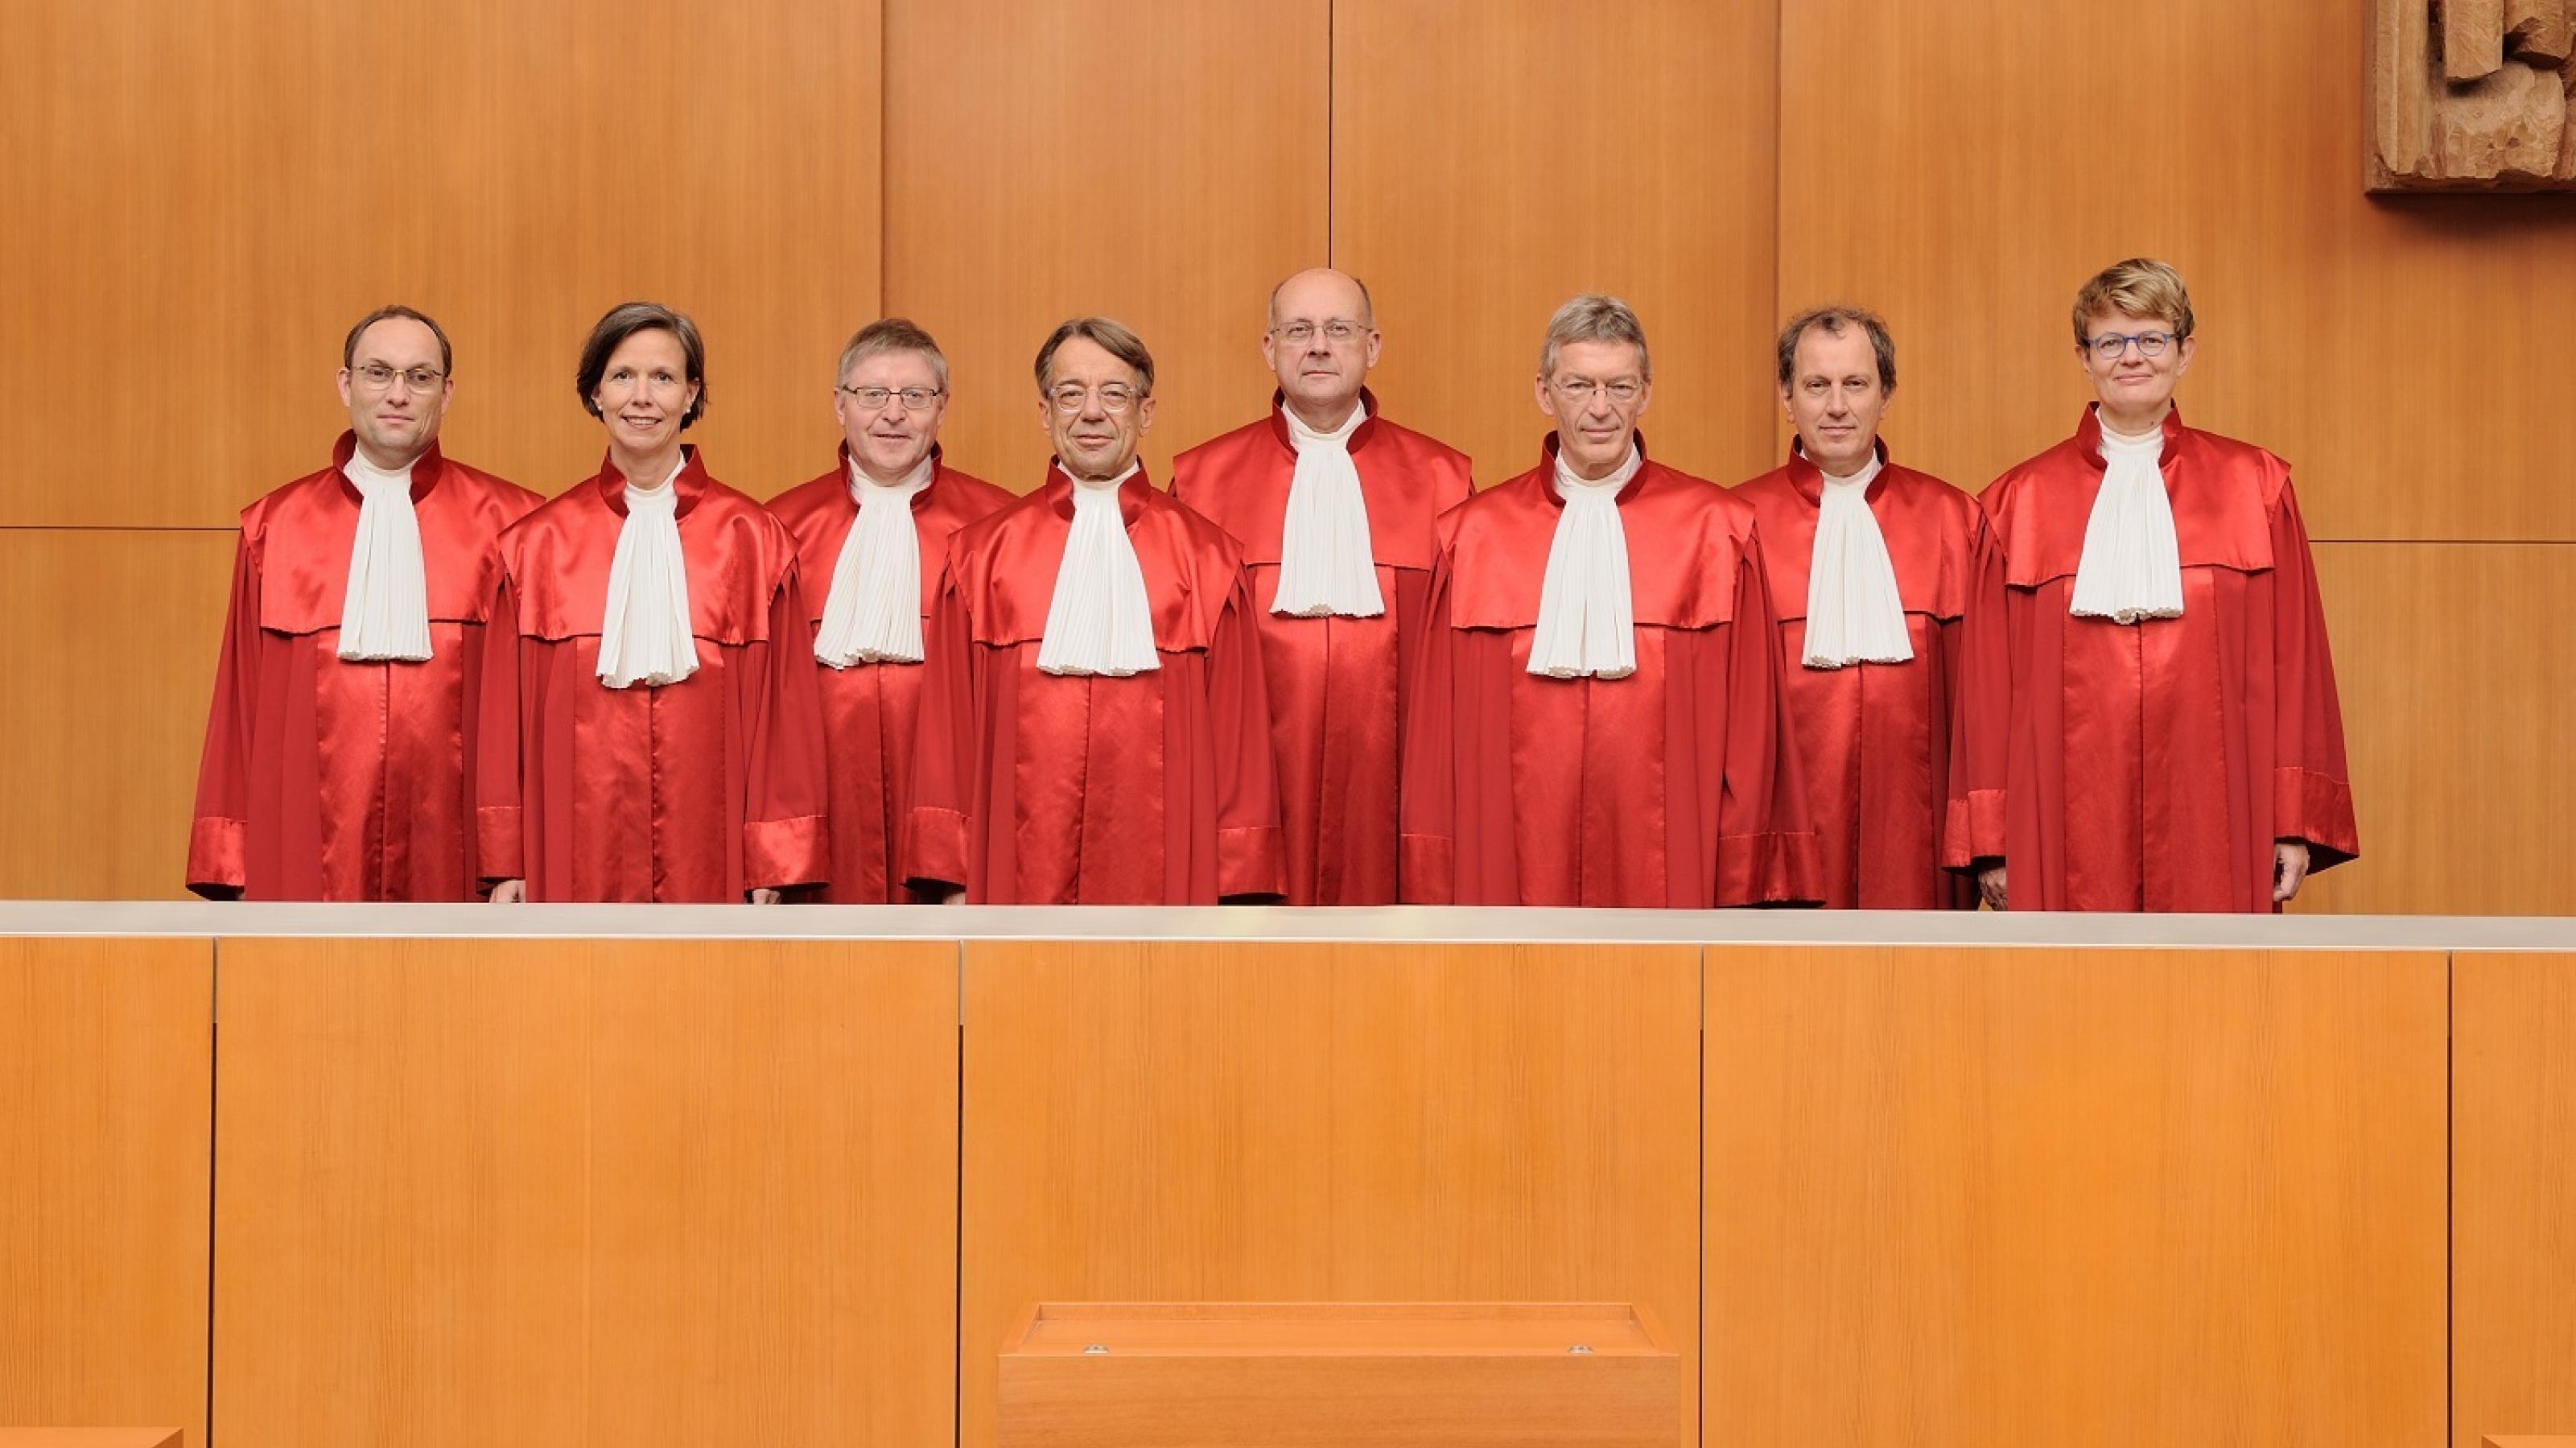 Richter und Richterinnen stehen in roten Roben in einer Reihe